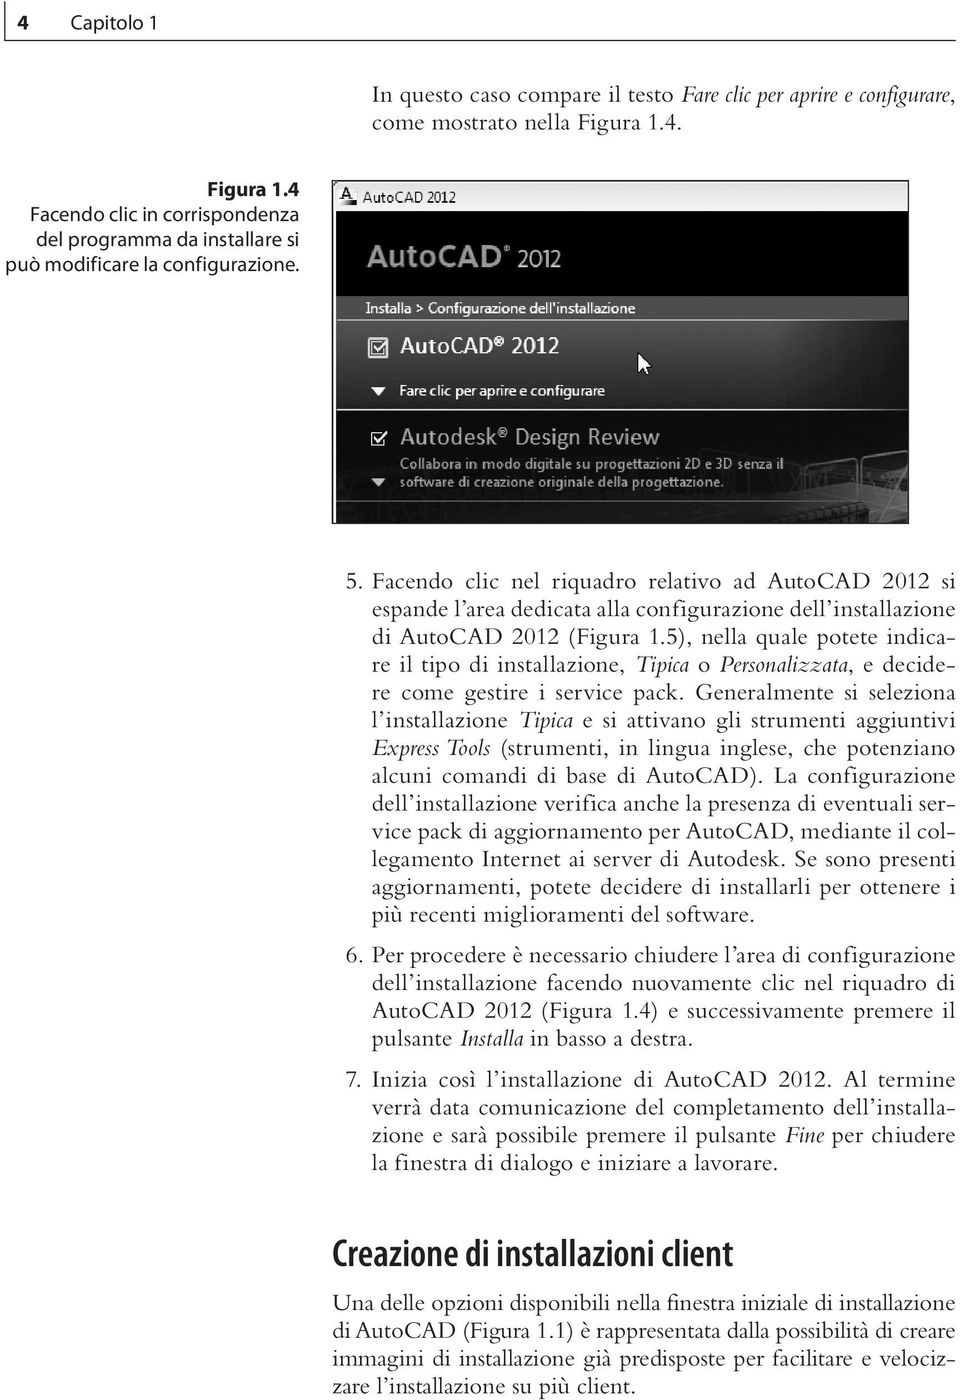 Facendo clic nel riquadro relativo ad AutoCAD 2012 si espande l area dedicata alla configurazione dell installazione di AutoCAD 2012 (Figura 1.